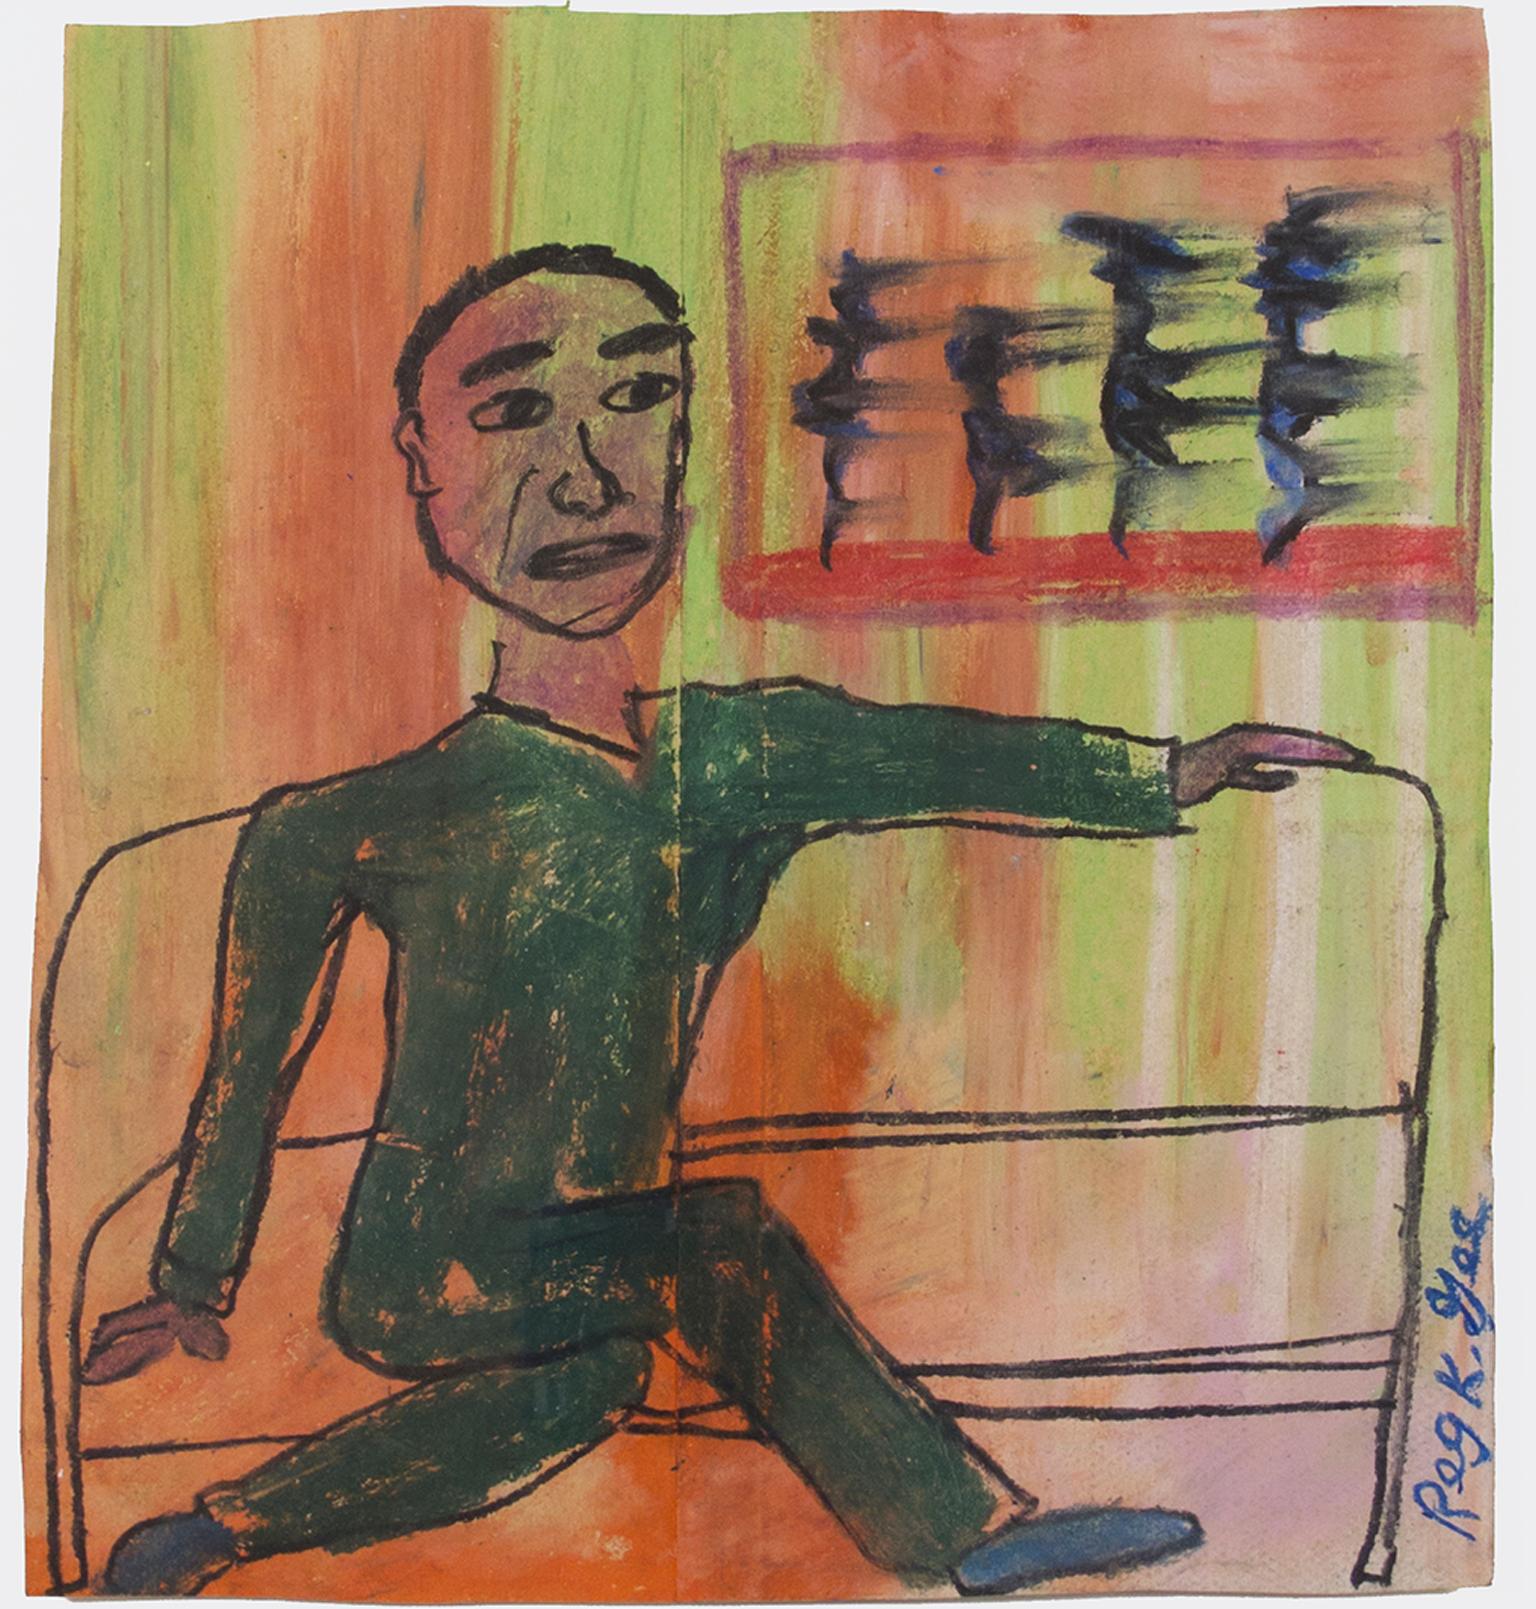 "Man on Express" ist eine Original-Ölpastellzeichnung auf einer Einkaufstüte von Reginald K. Gee. Der Künstler hat das Werk am unteren rechten Rand signiert. Es zeigt einen Mann in einem grünen Anzug, der sich in einem Zug entspannt. Der Hintergrund